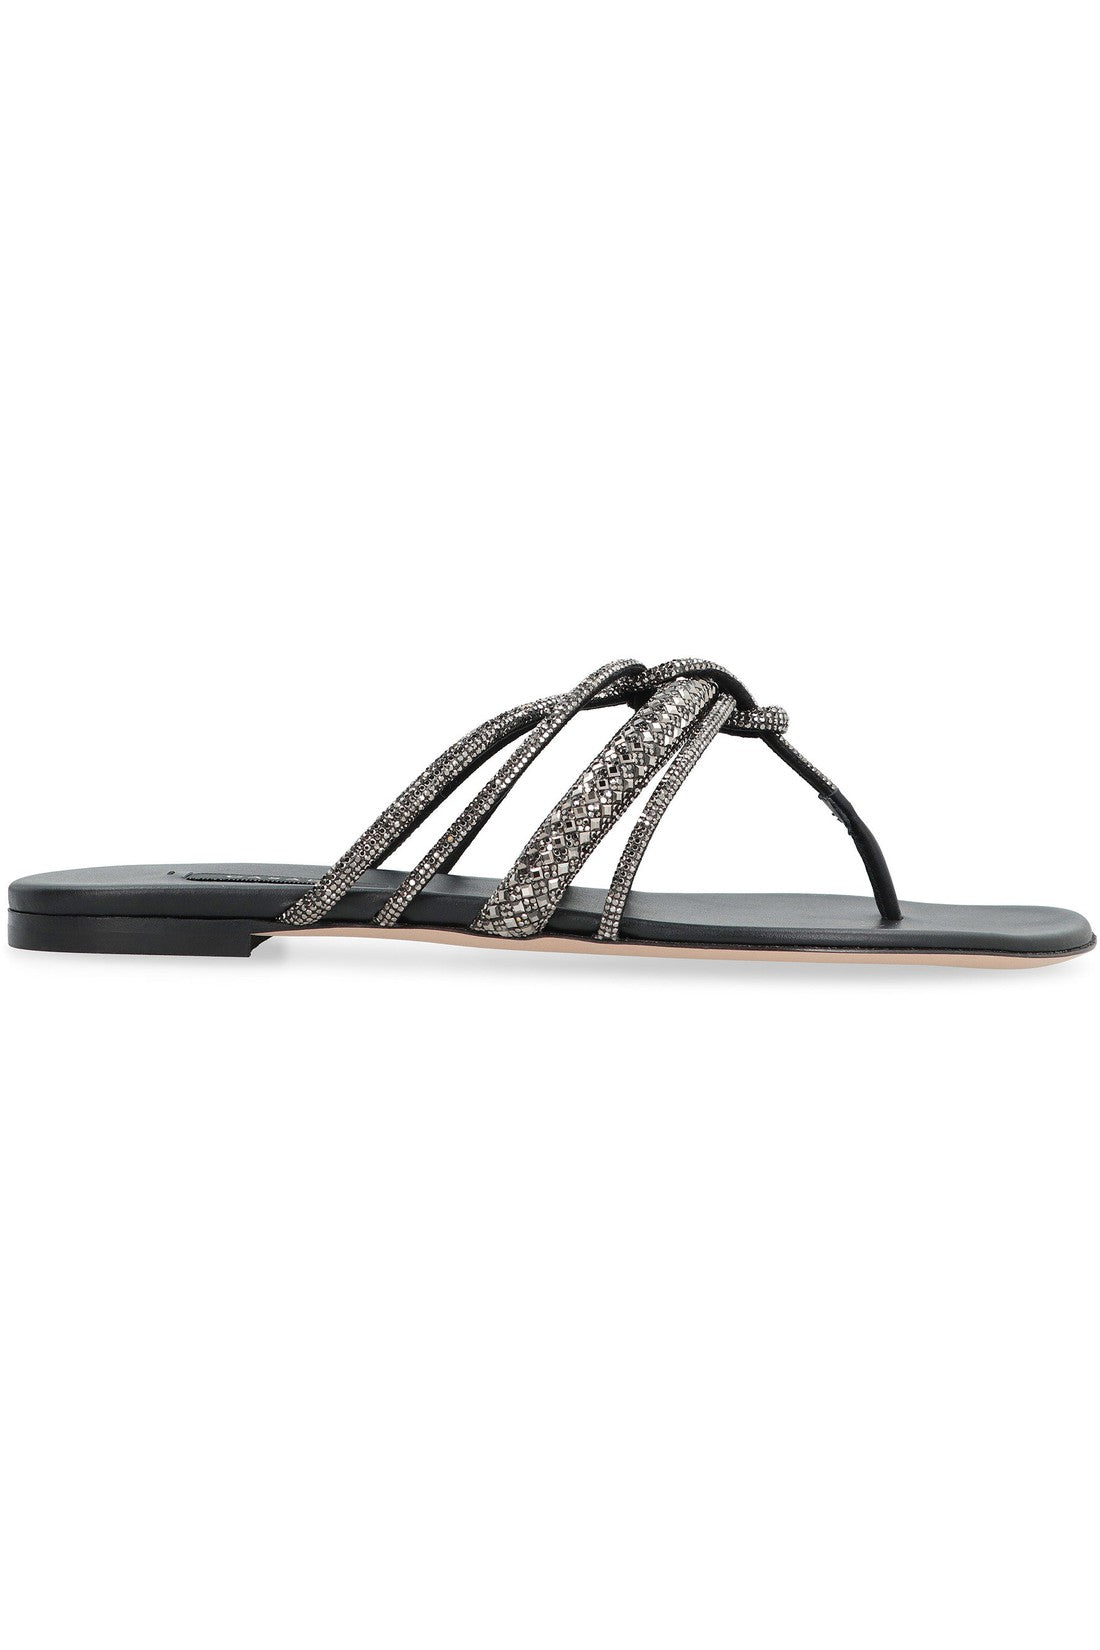 Casadei-OUTLET-SALE-Leather flat sandals-ARCHIVIST